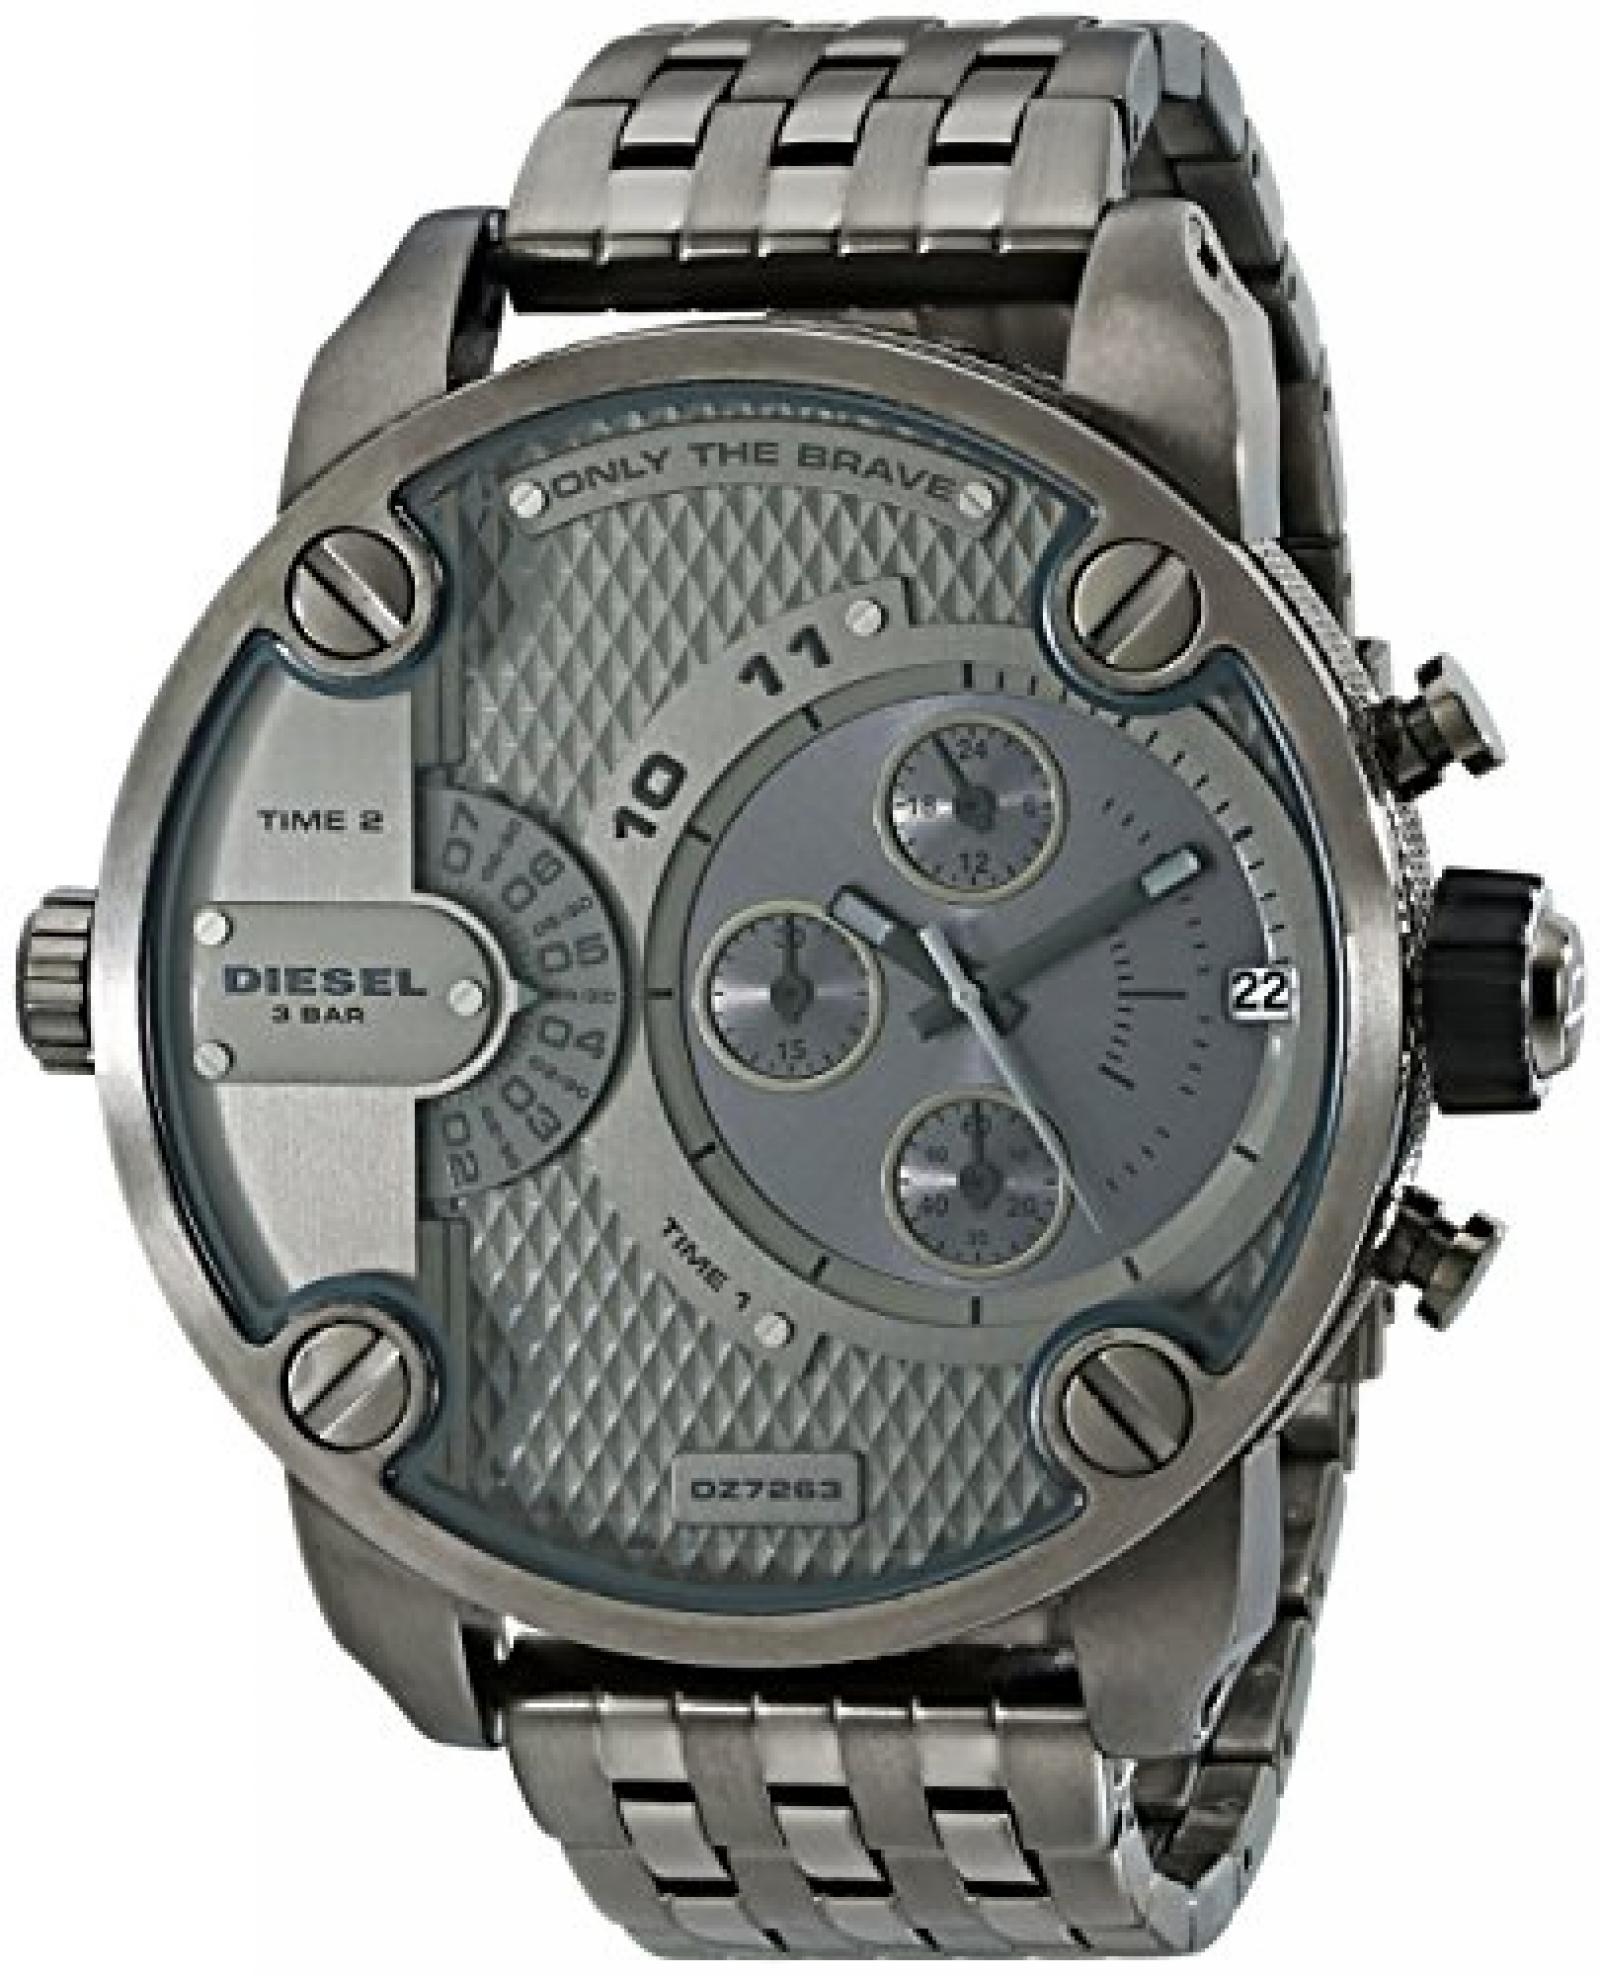 Diesel Herren-Armbanduhr XL SBA Chronograph Quarz Edelstahl beschichtet DZ7263 